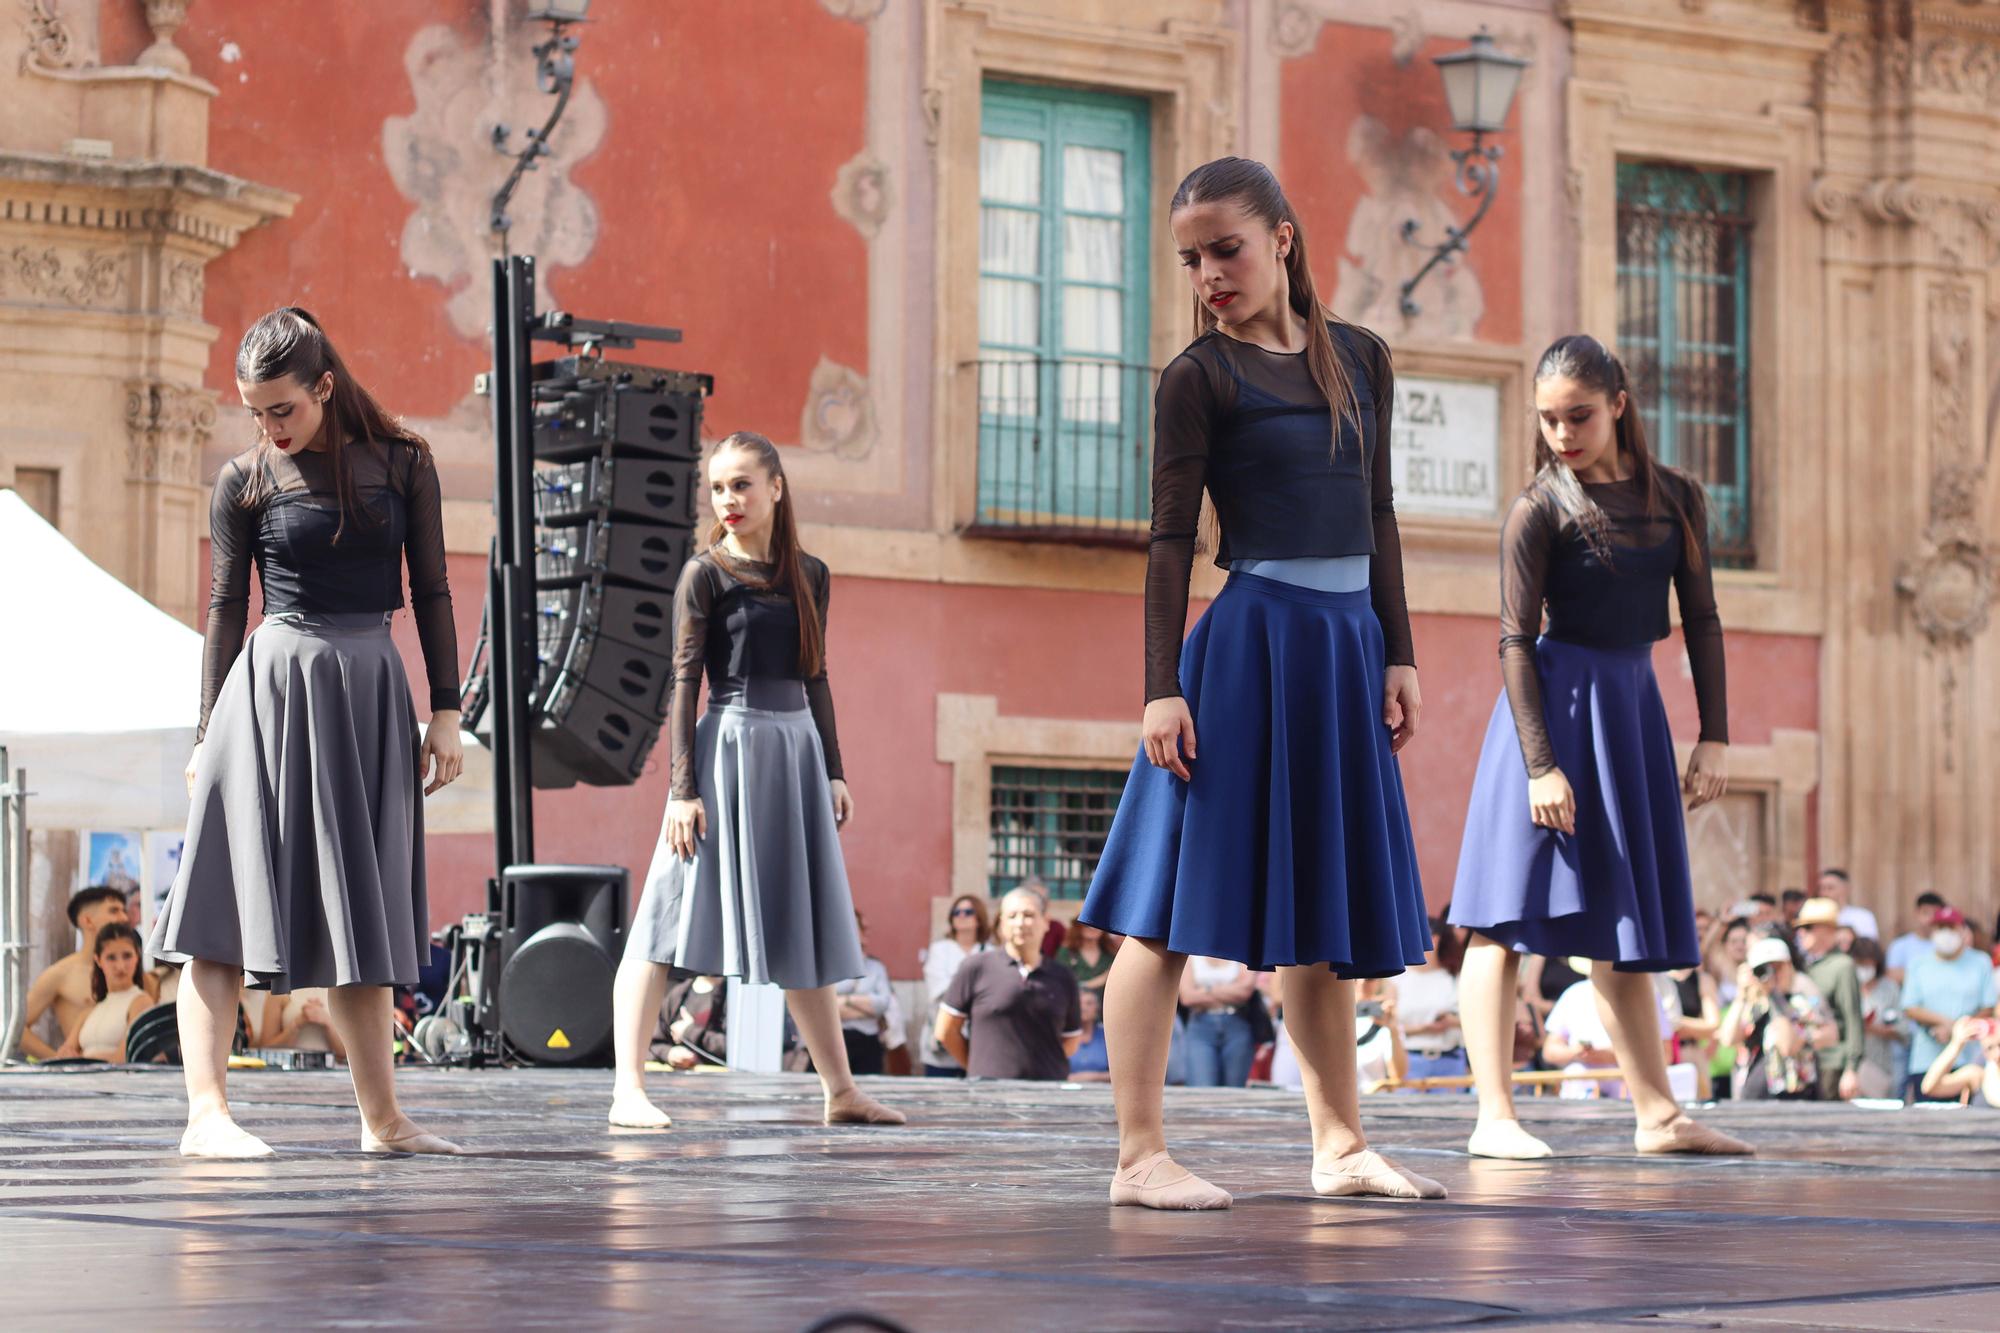 Exhibición de danza en la plaza Belluga de Murcia